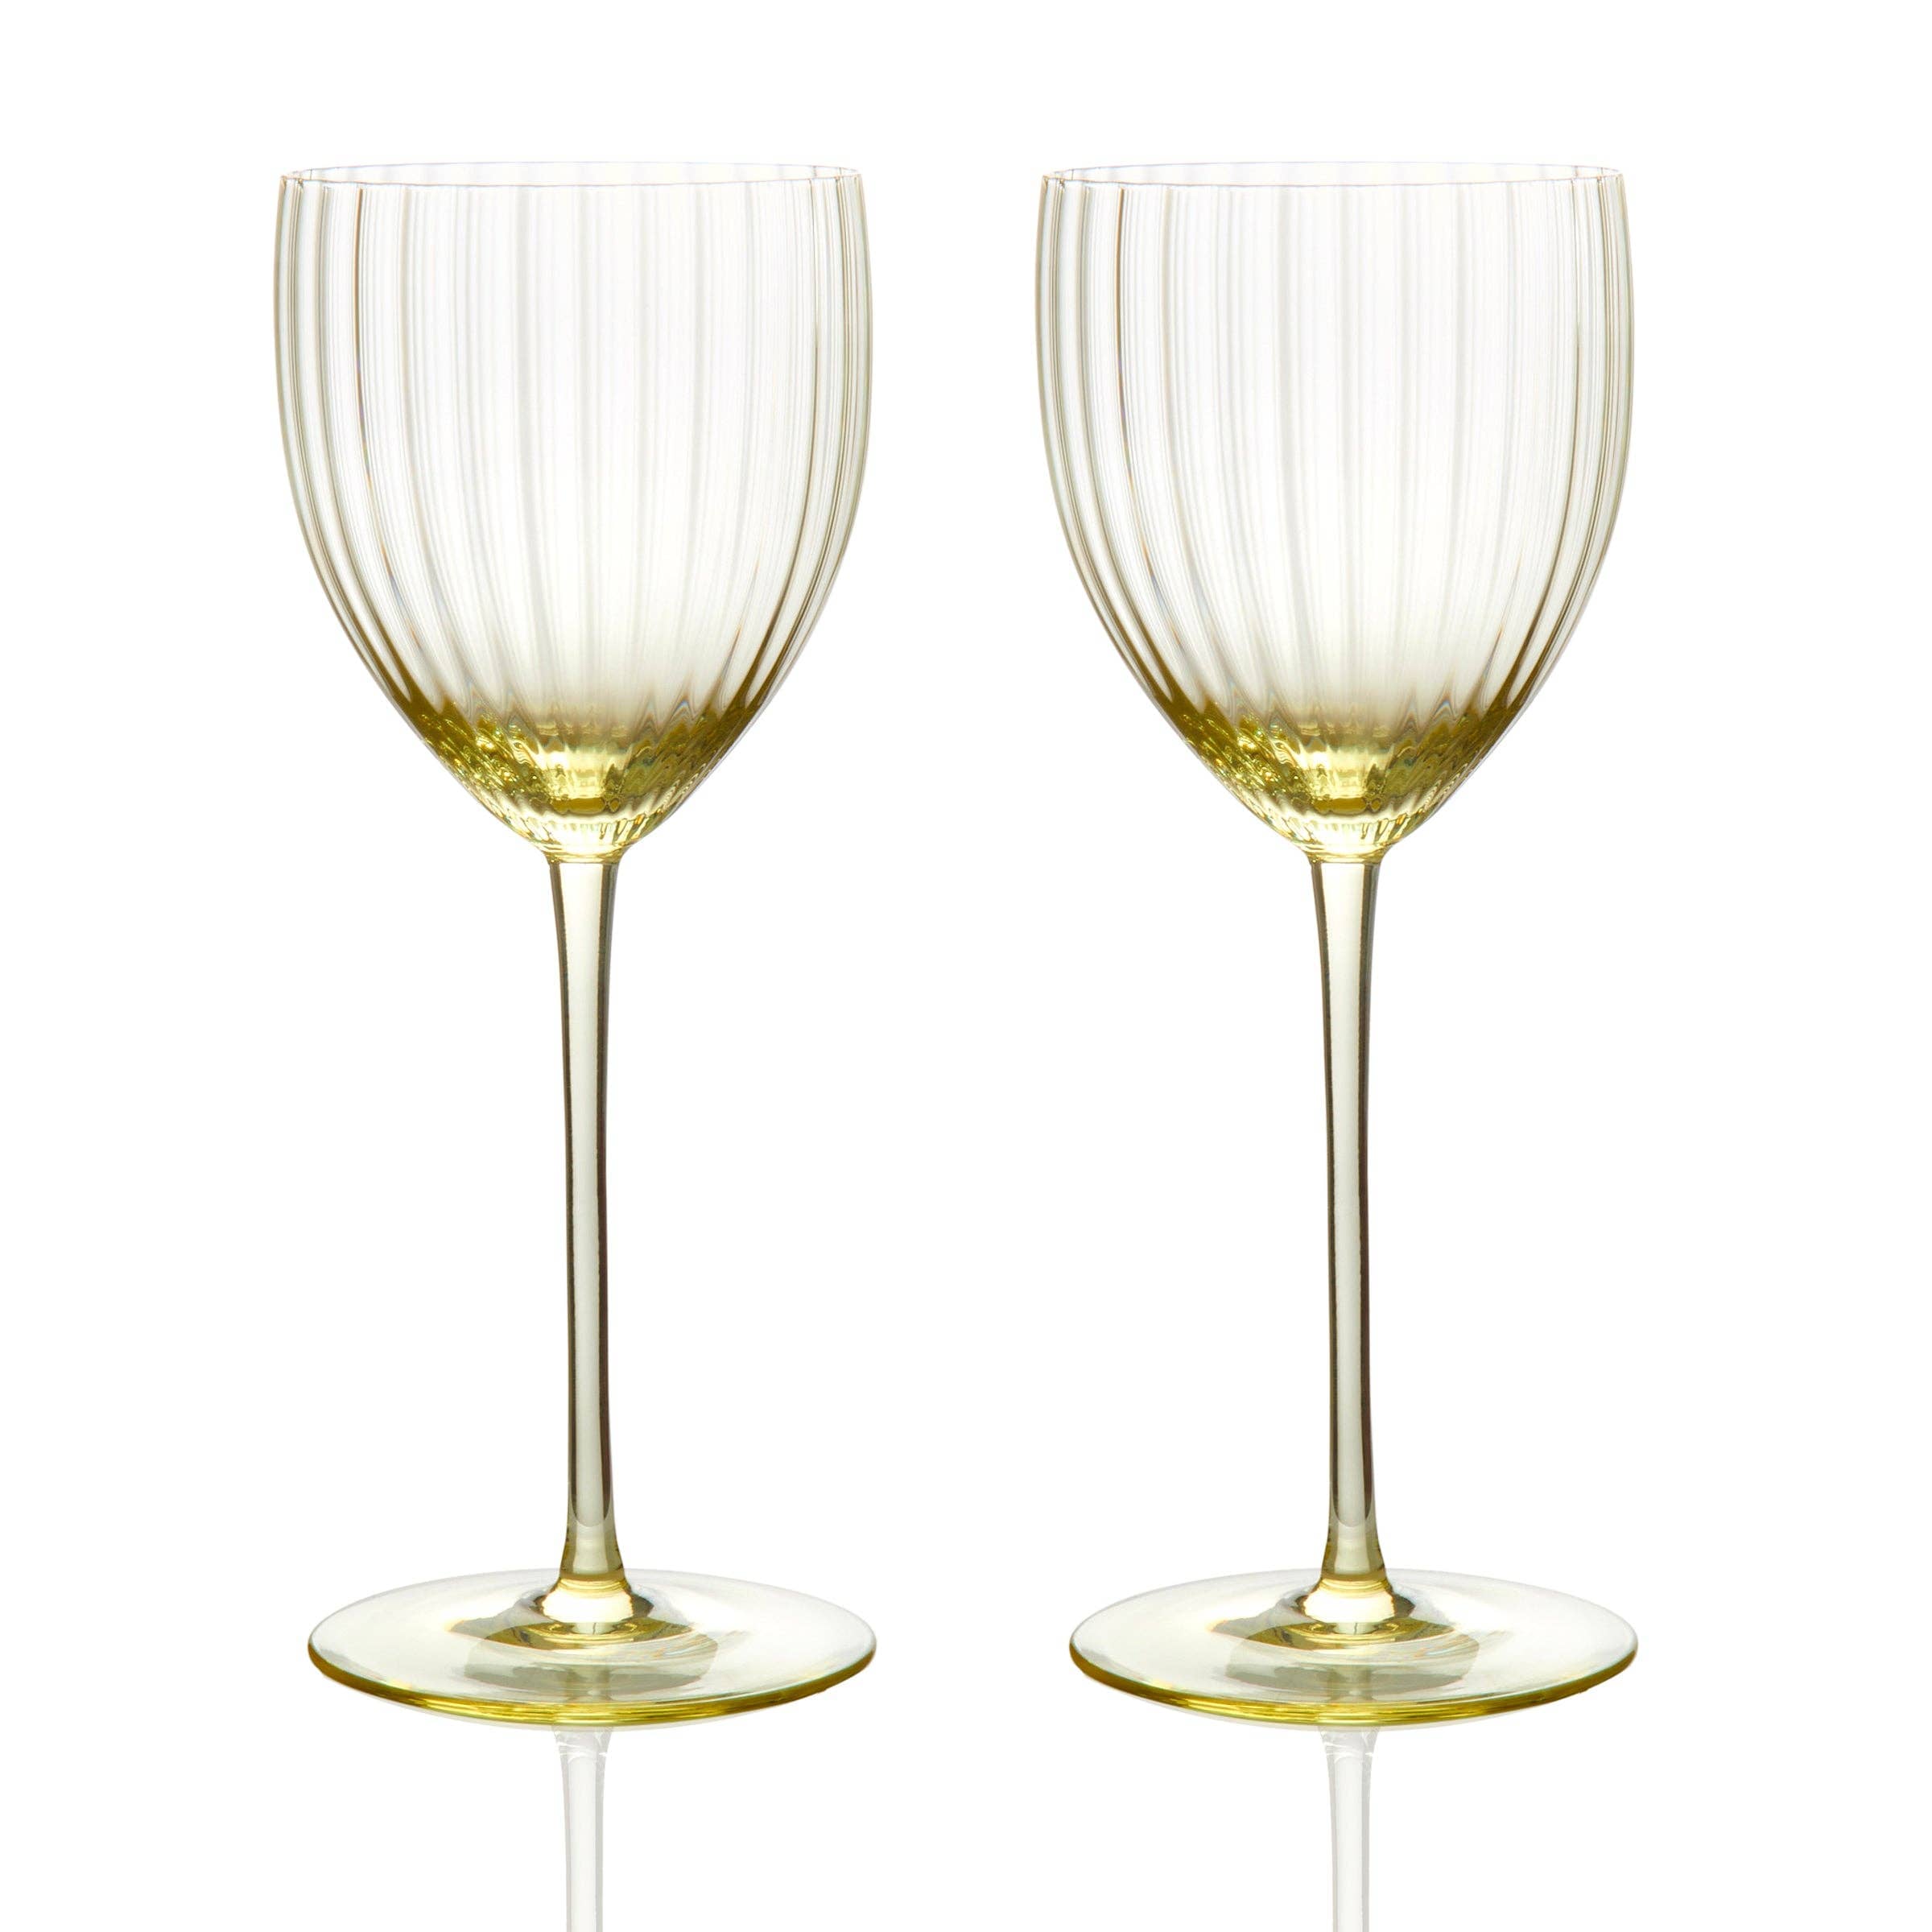 Caskata Quinn Martini Glasses, Set of 2, Mouth-Blown Glass